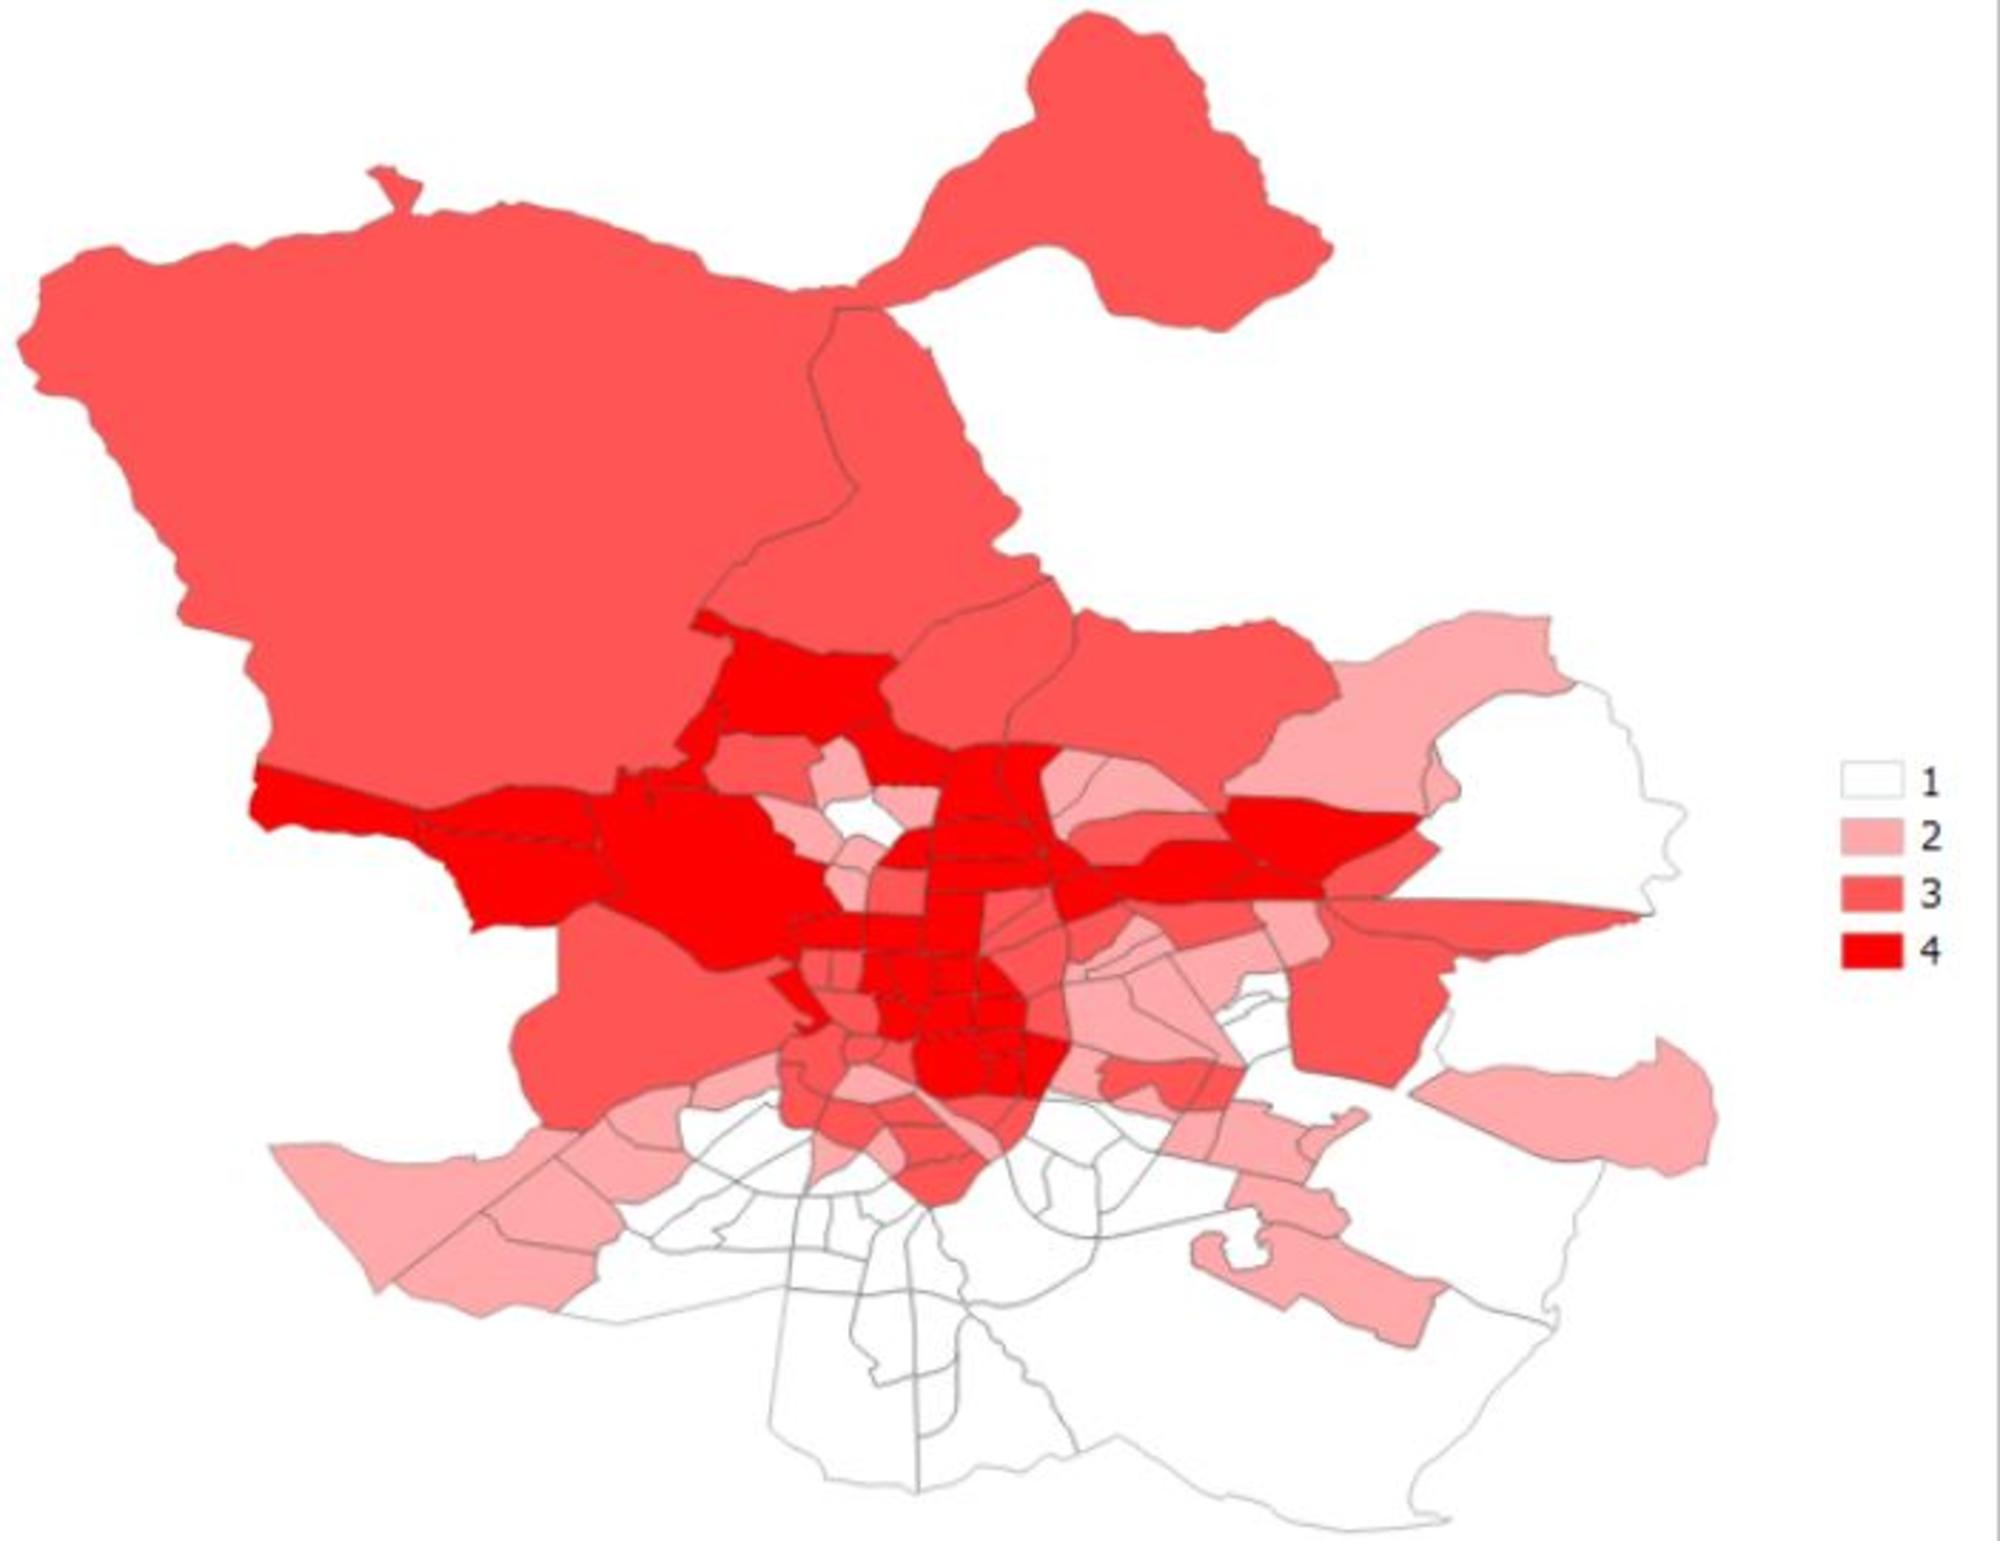 Barrios de la ciudad de Madrid clasificados en función de su renta bruta por hogar (2018)